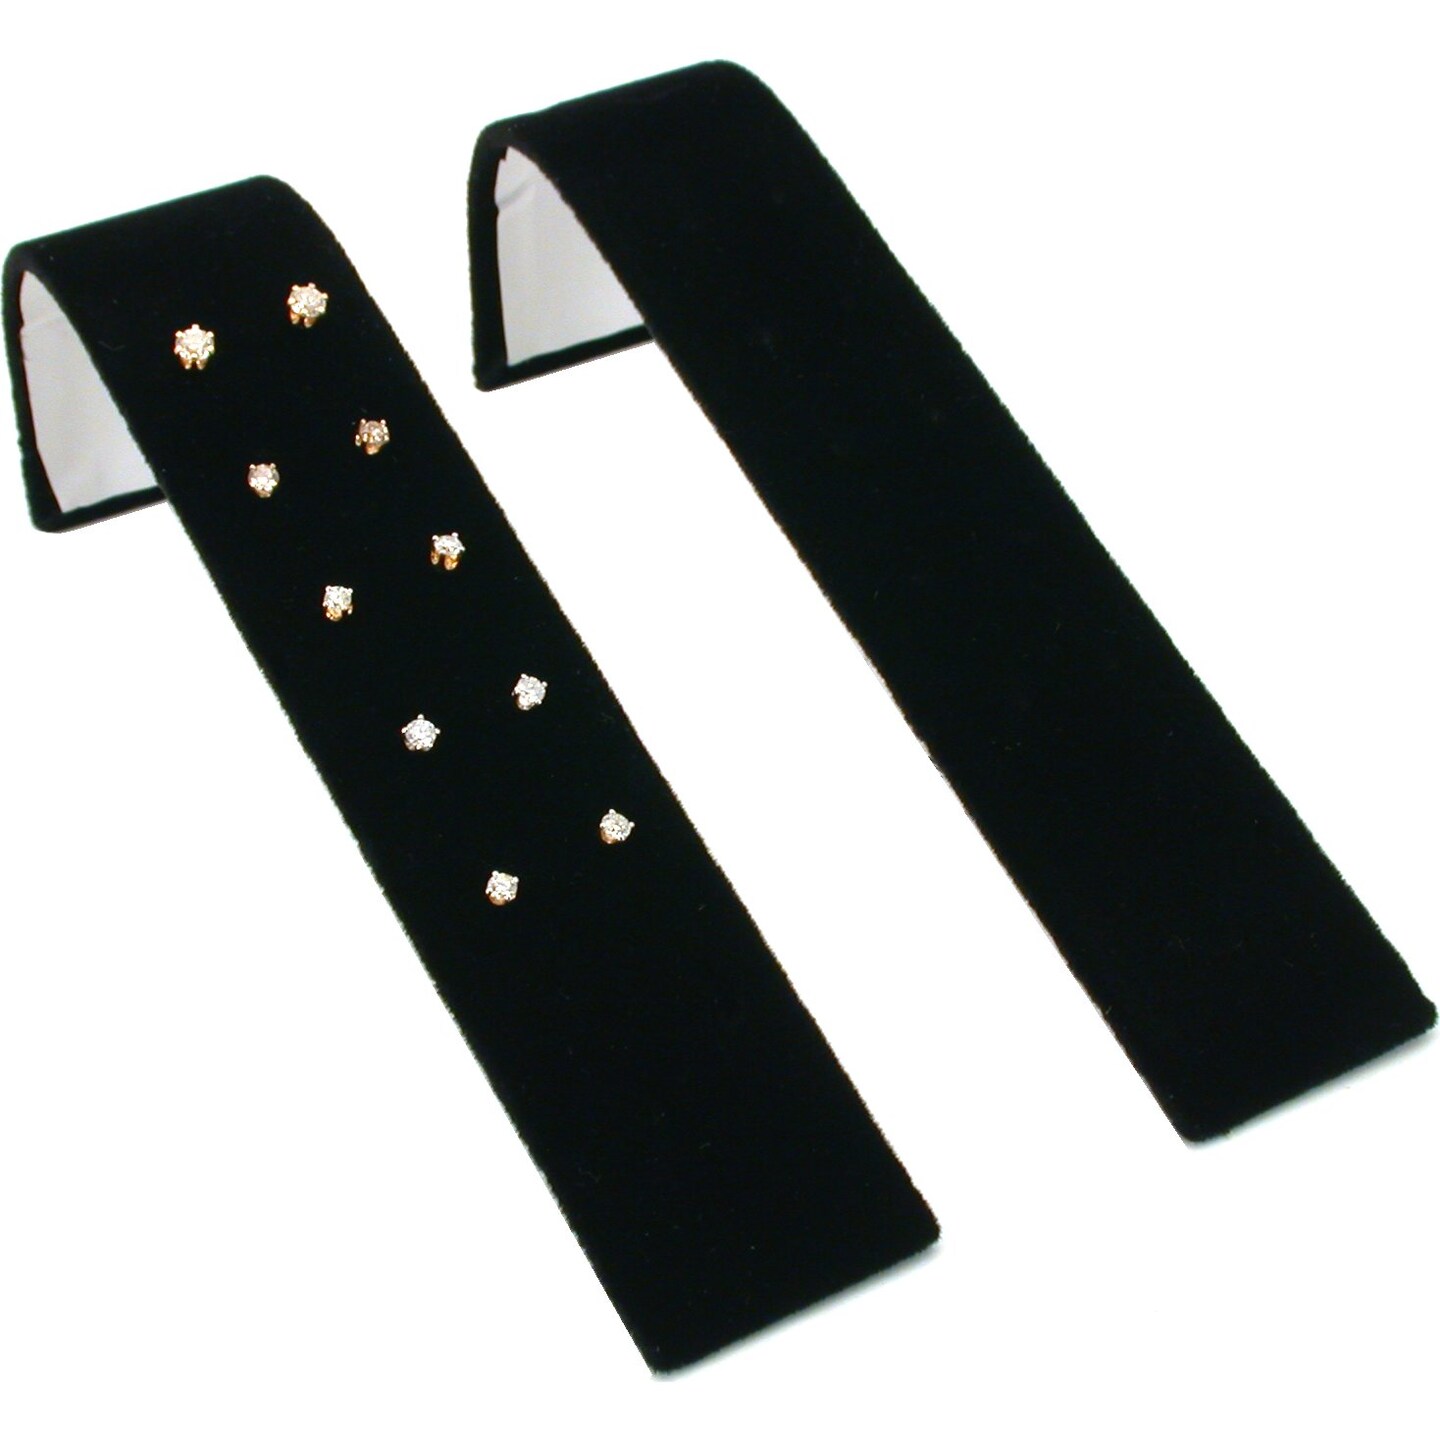 2 Black Velvet Earring Display Holds 5 Pair of Earrings